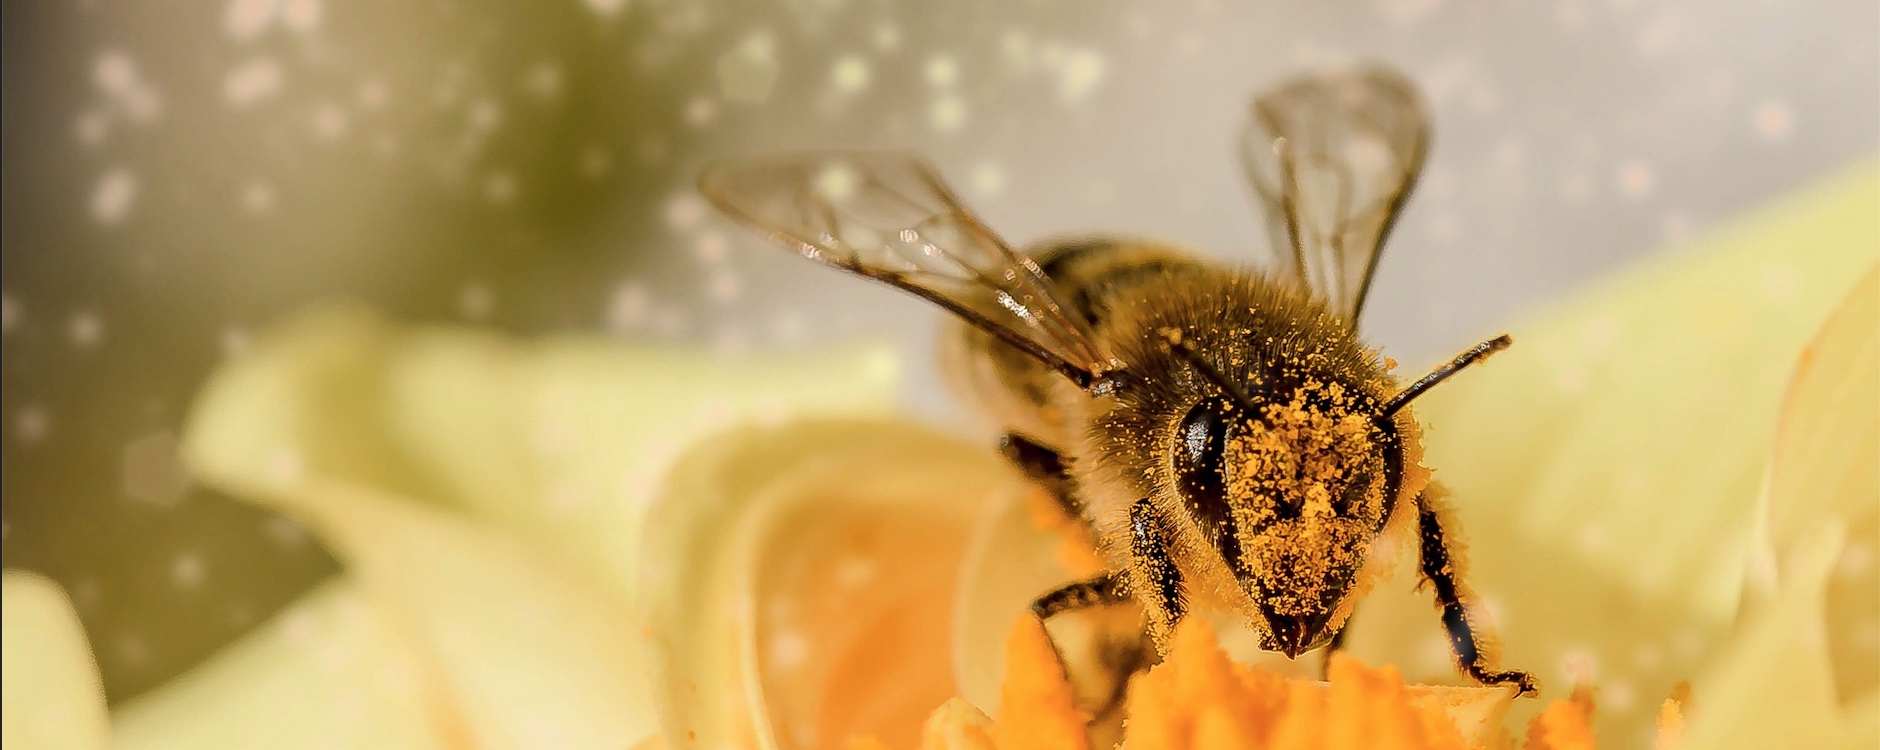 Dispariția insectelor polenizatoare afectează negativ producția de fructe și legume